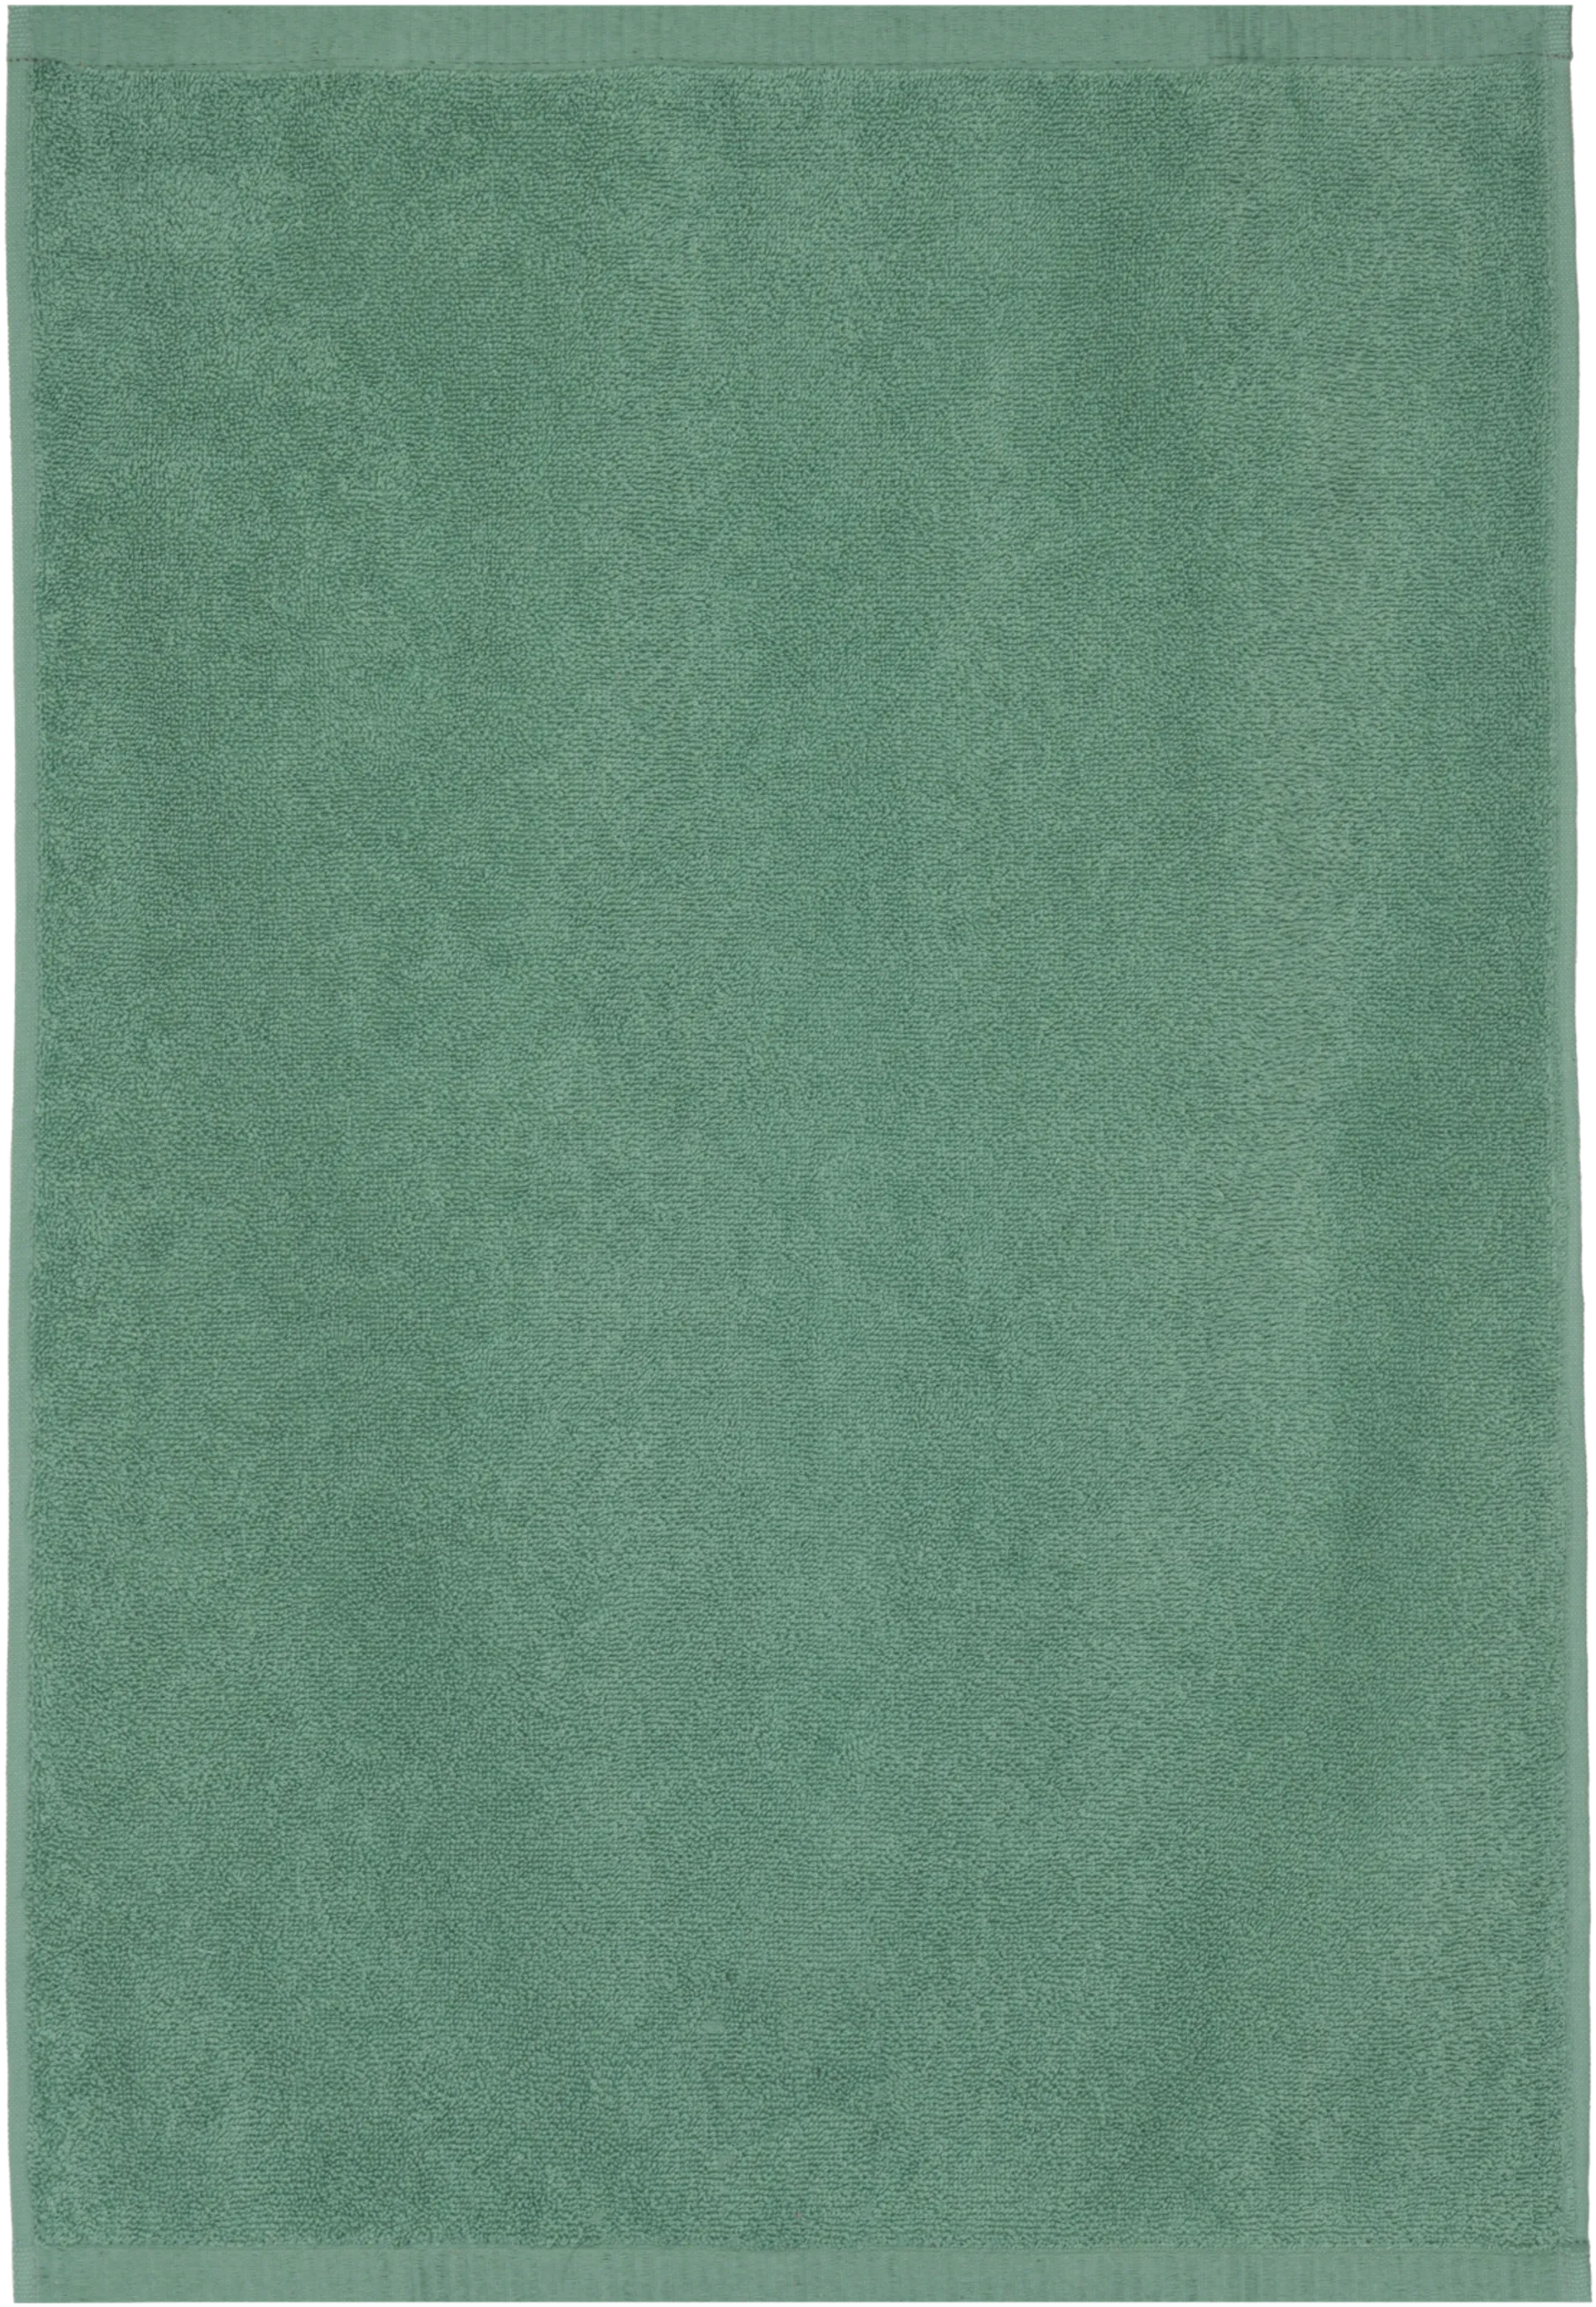 House käsipyyhe Minea 50x70 cm vihreä